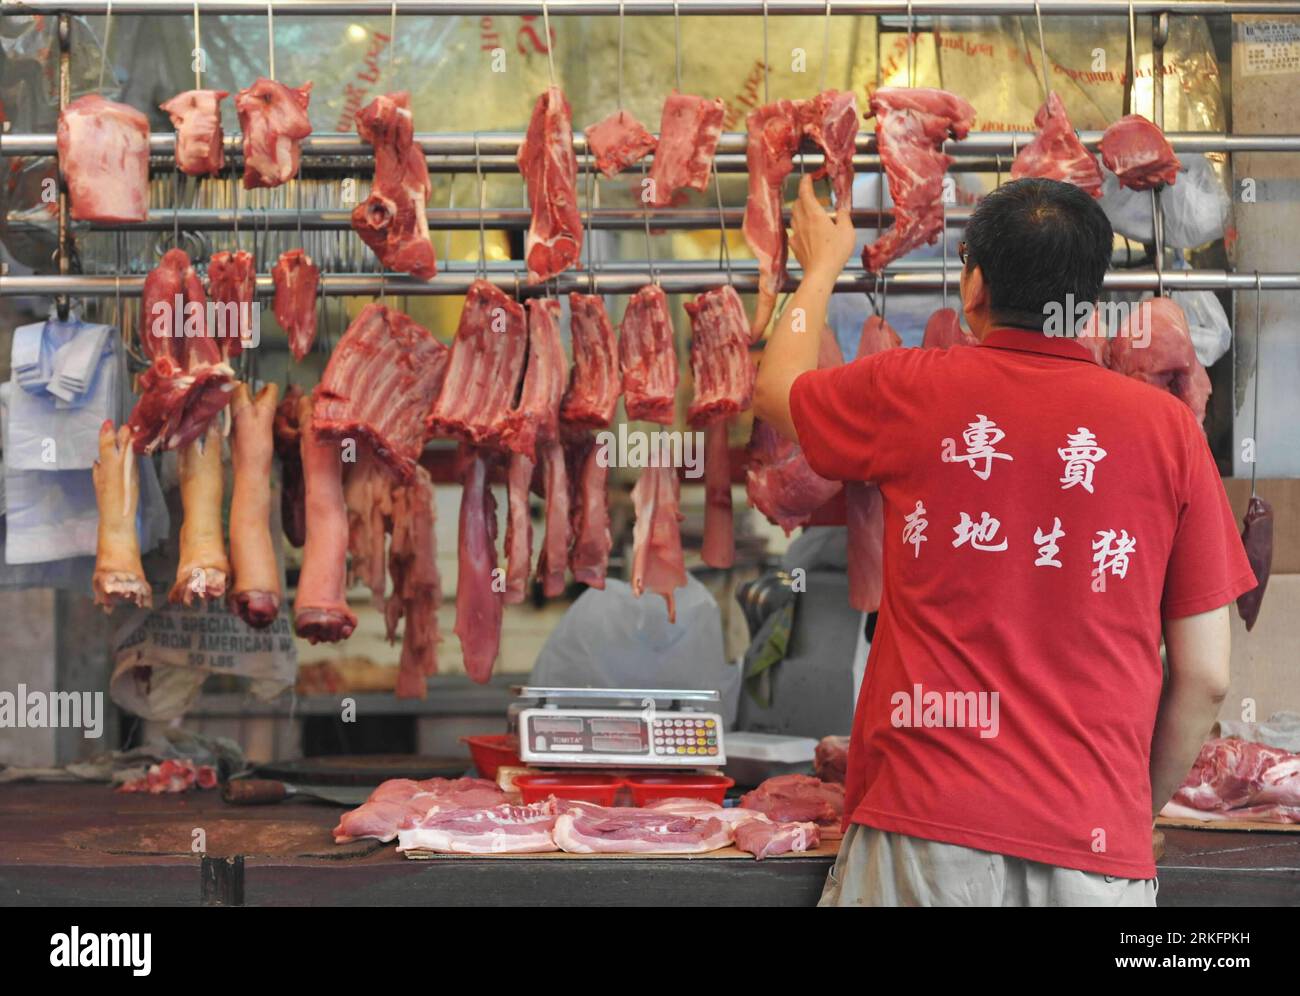 Bildnummer : 55447449 Datum : 11.06.2011 Copyright : imago/Xinhua (110611) -- HONG KONG, 11 juin 2011 (Xinhua) -- Un commerçant vend du porc sur un marché de Hong Kong, dans le sud de la Chine, le 11 juin 2011. Ng Fung Hong Limited, le seul agent responsable du transport du bétail et de la viande congelée du continent chinois à Hong Kong, a annoncé vendredi une hausse des prix commerciaux de 3,29 pour cent et 2,89 pour cent respectivement pour la race fine de bovins et les bovins gras. Le prix de détail du porc à Hong Kong a augmenté de 15 pour cent depuis avril. (Xinhua/Huang Xiaoyong)(mcg) CHINE-HONG KONG-AUGMENTATION DES PRIX DU BŒUF ET DU PORC (CN) PUBLICA Banque D'Images